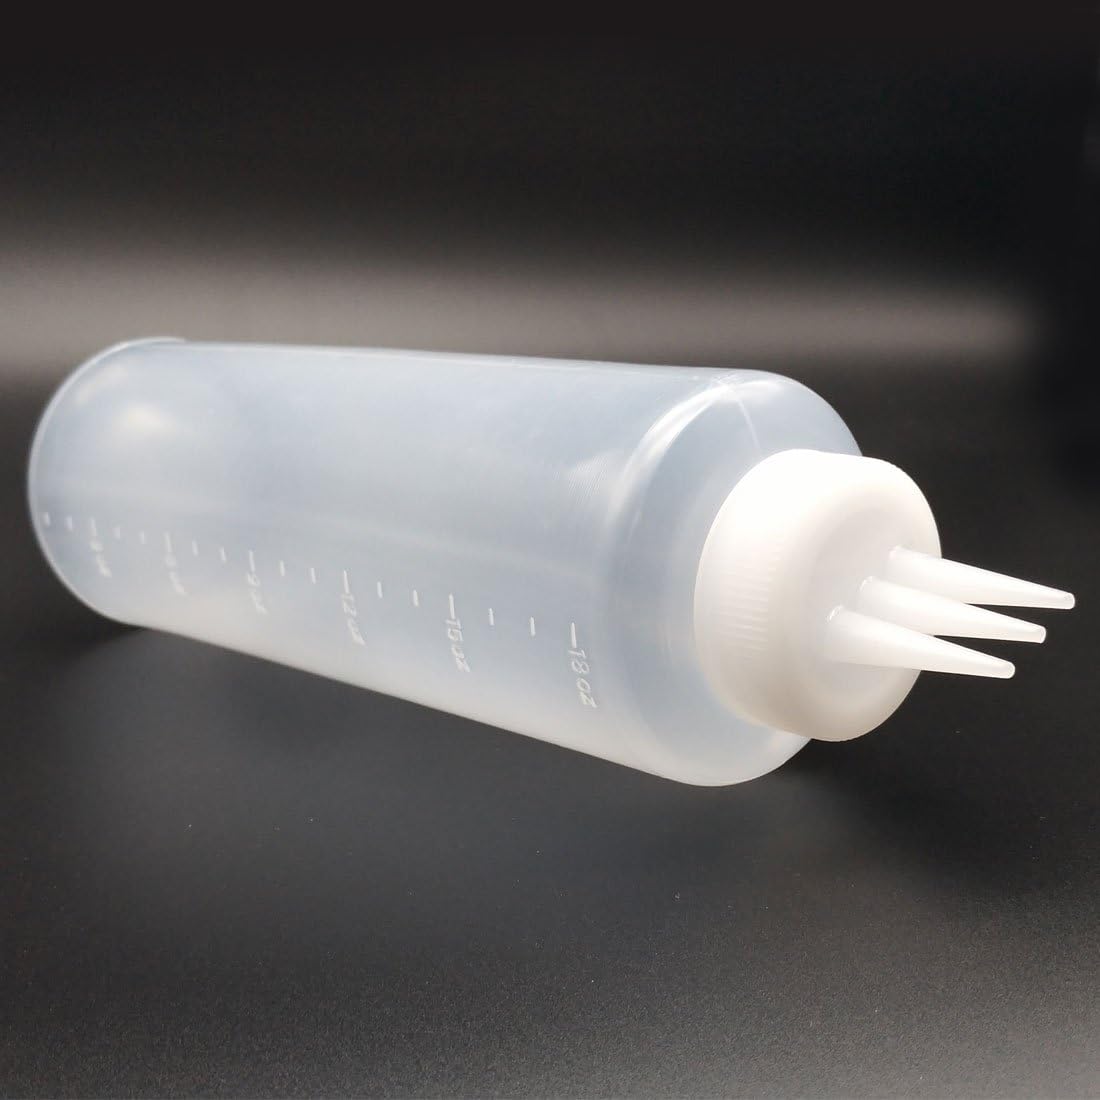 650ml 3-Hole Sauce Condiment Plastic Bottle with Measurements